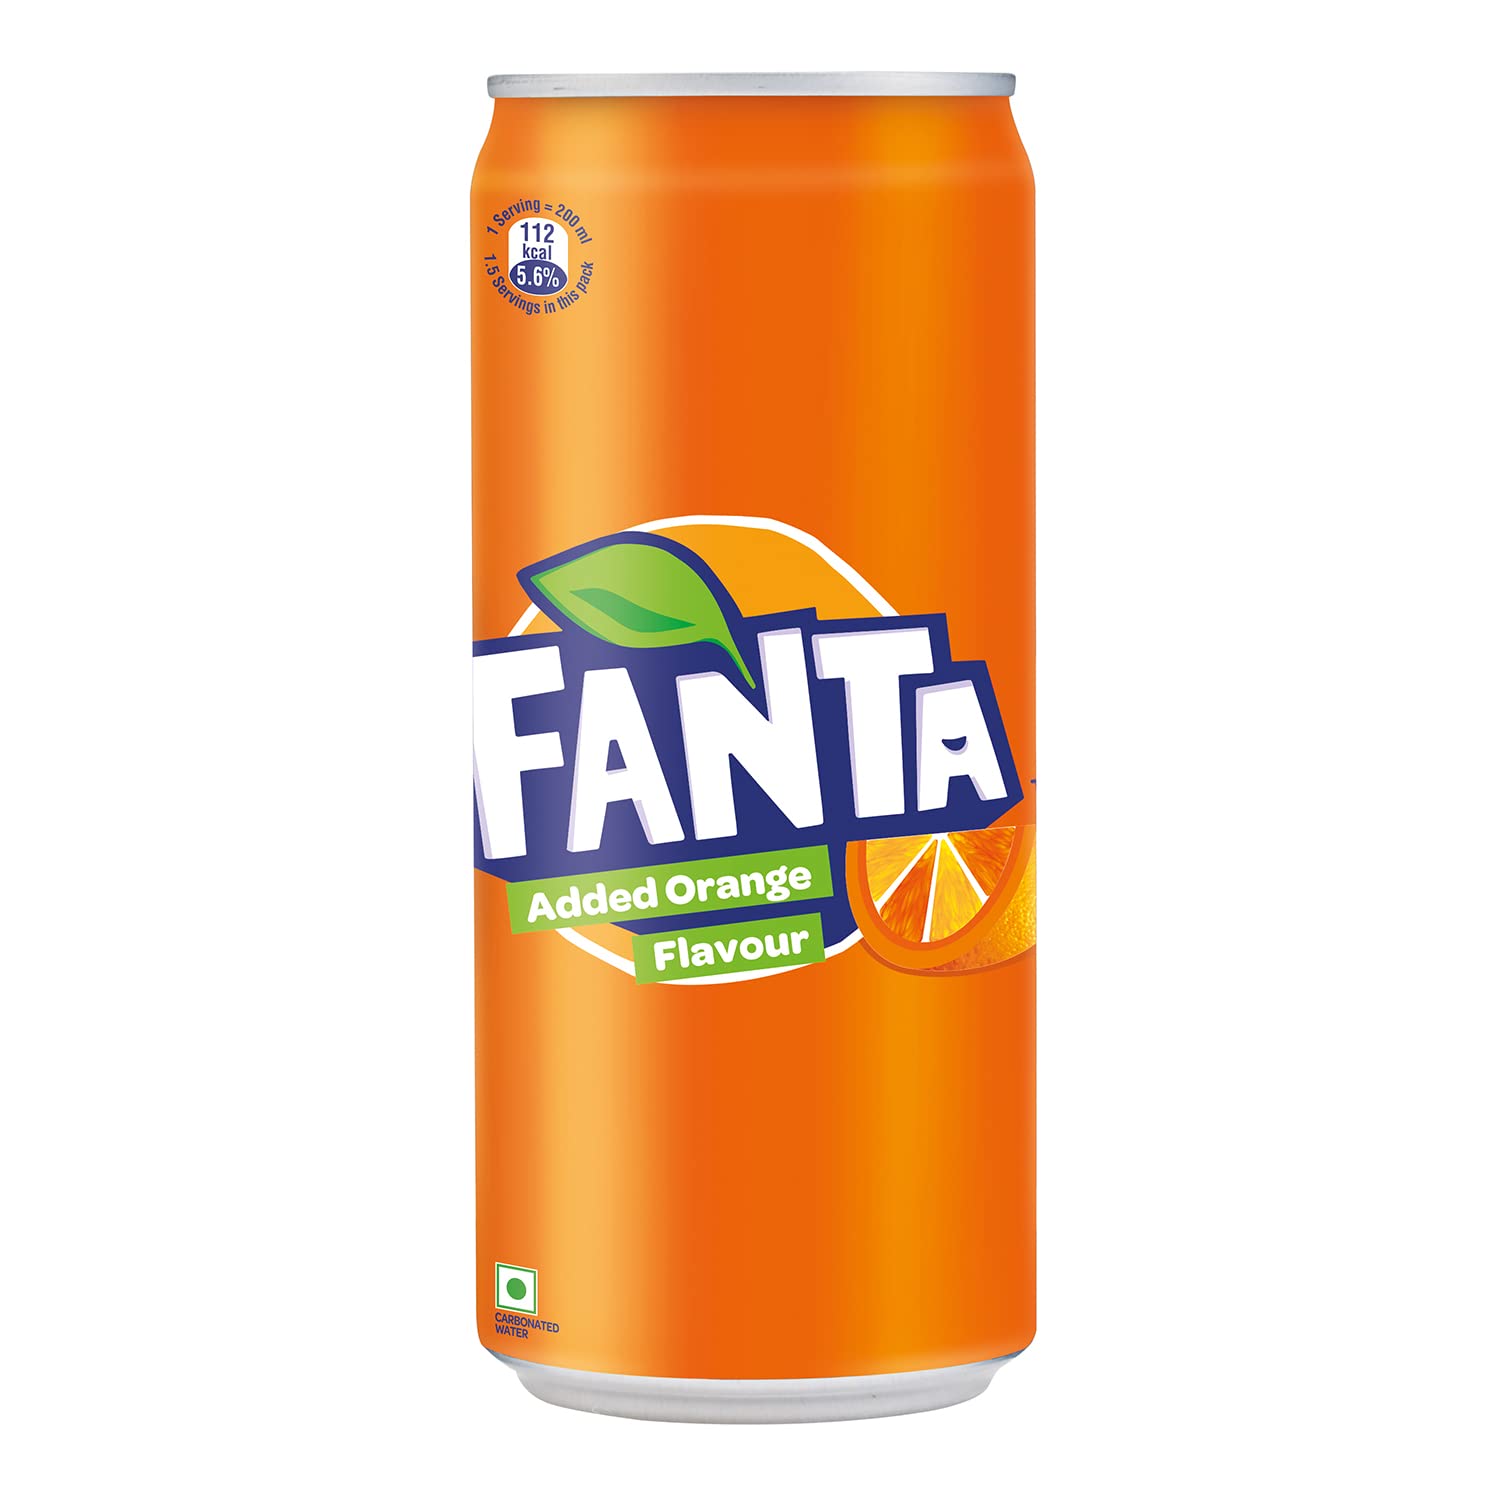 فانتا Fanta